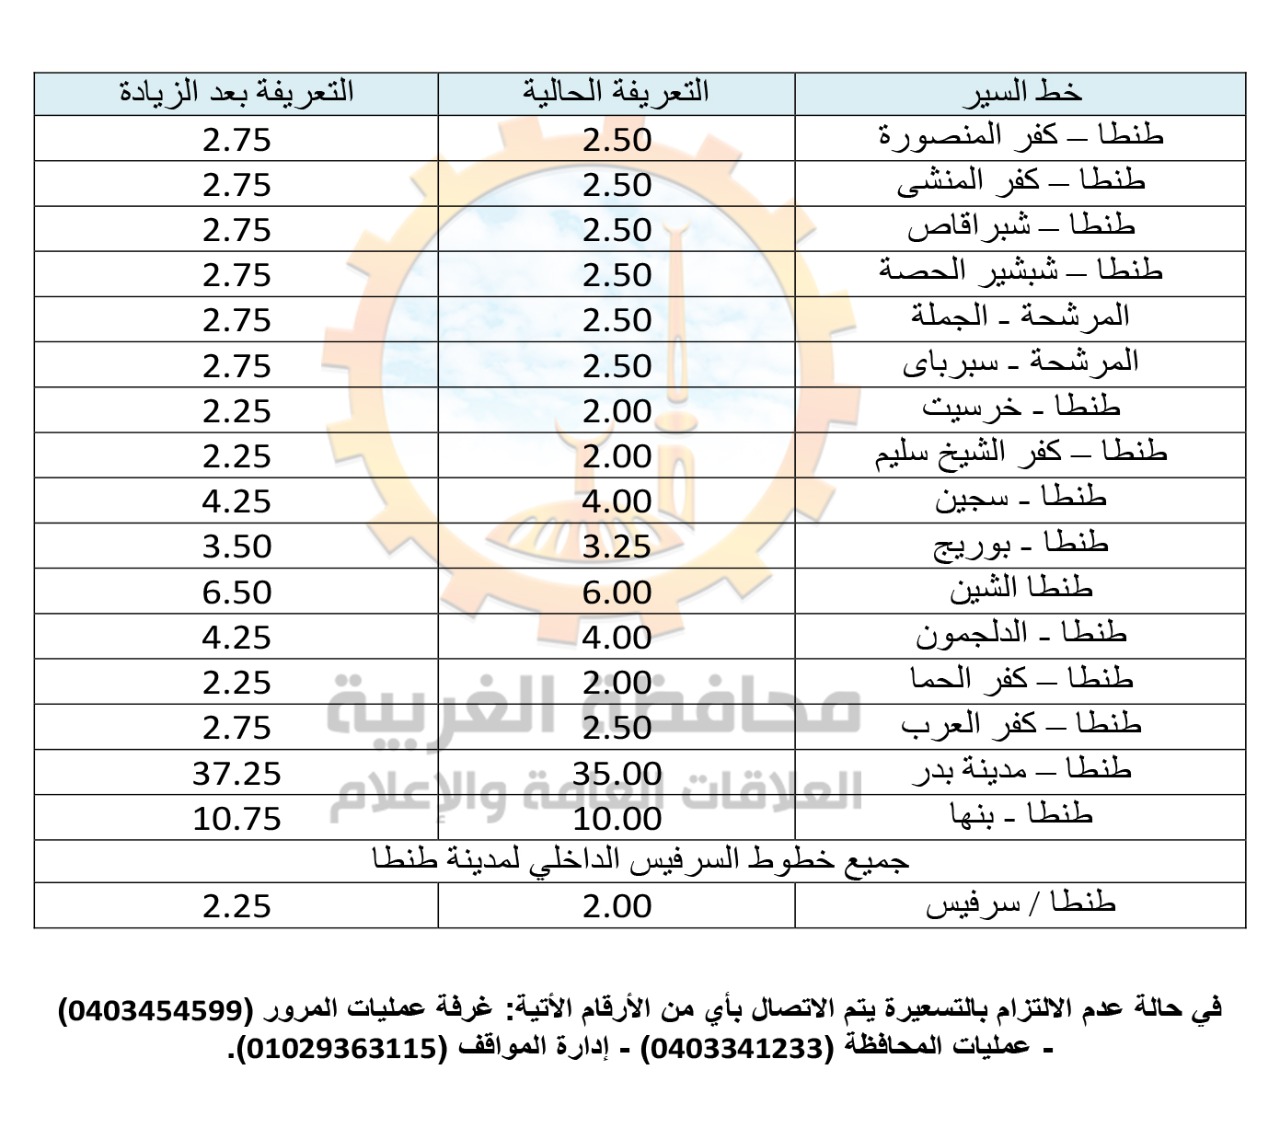 التعريفة الجديدة لسيارات الأجرة بالغربية بعد تحريك أسعار الوقود | صور -  بوابة الأهرام